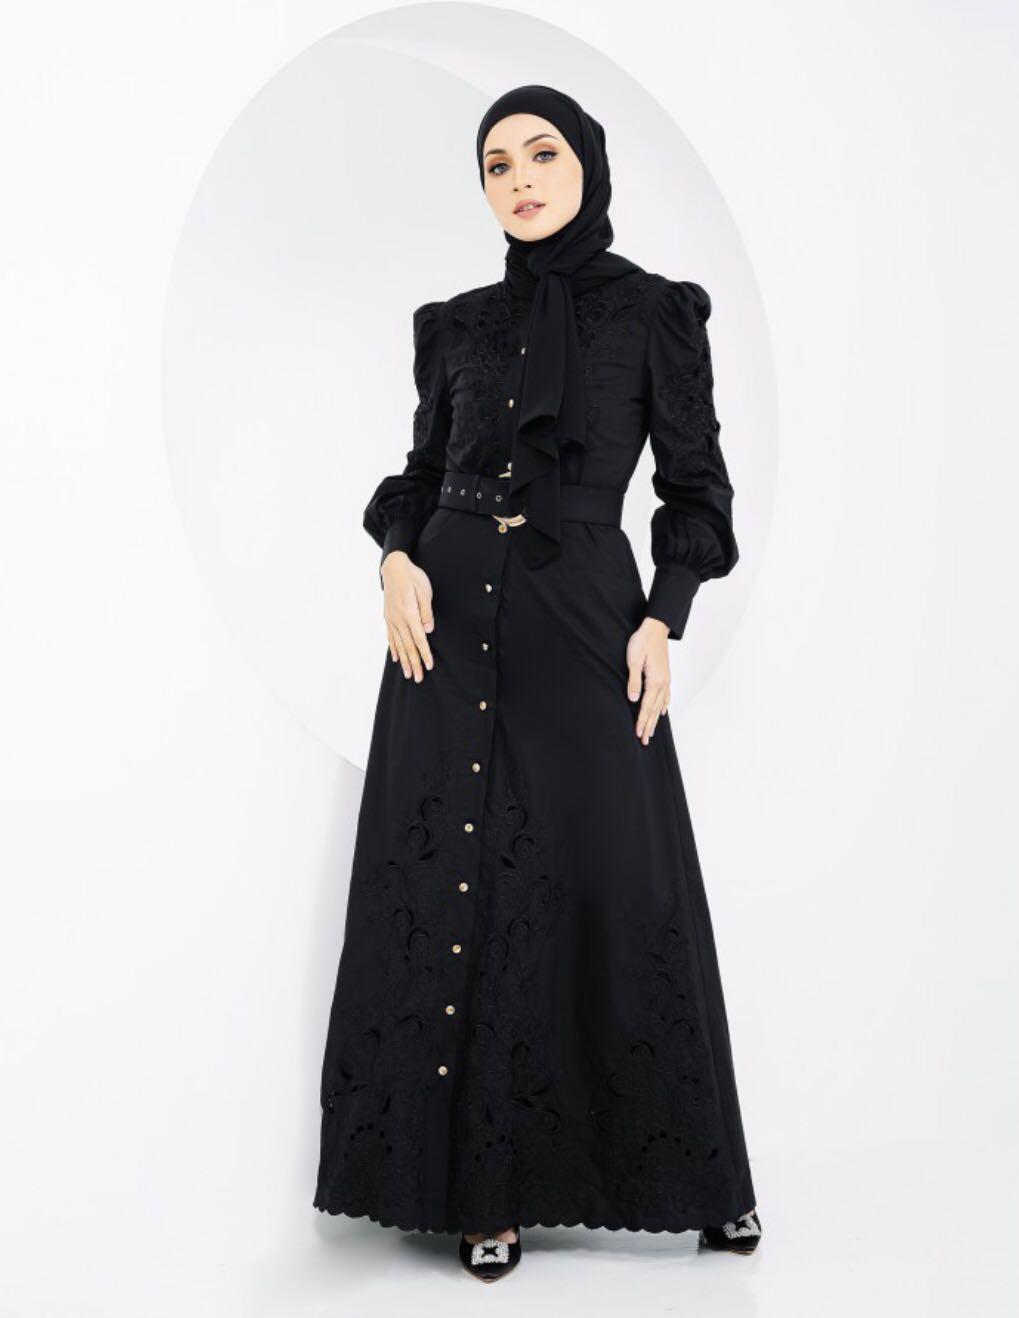 Hub hijabista Beli Baju